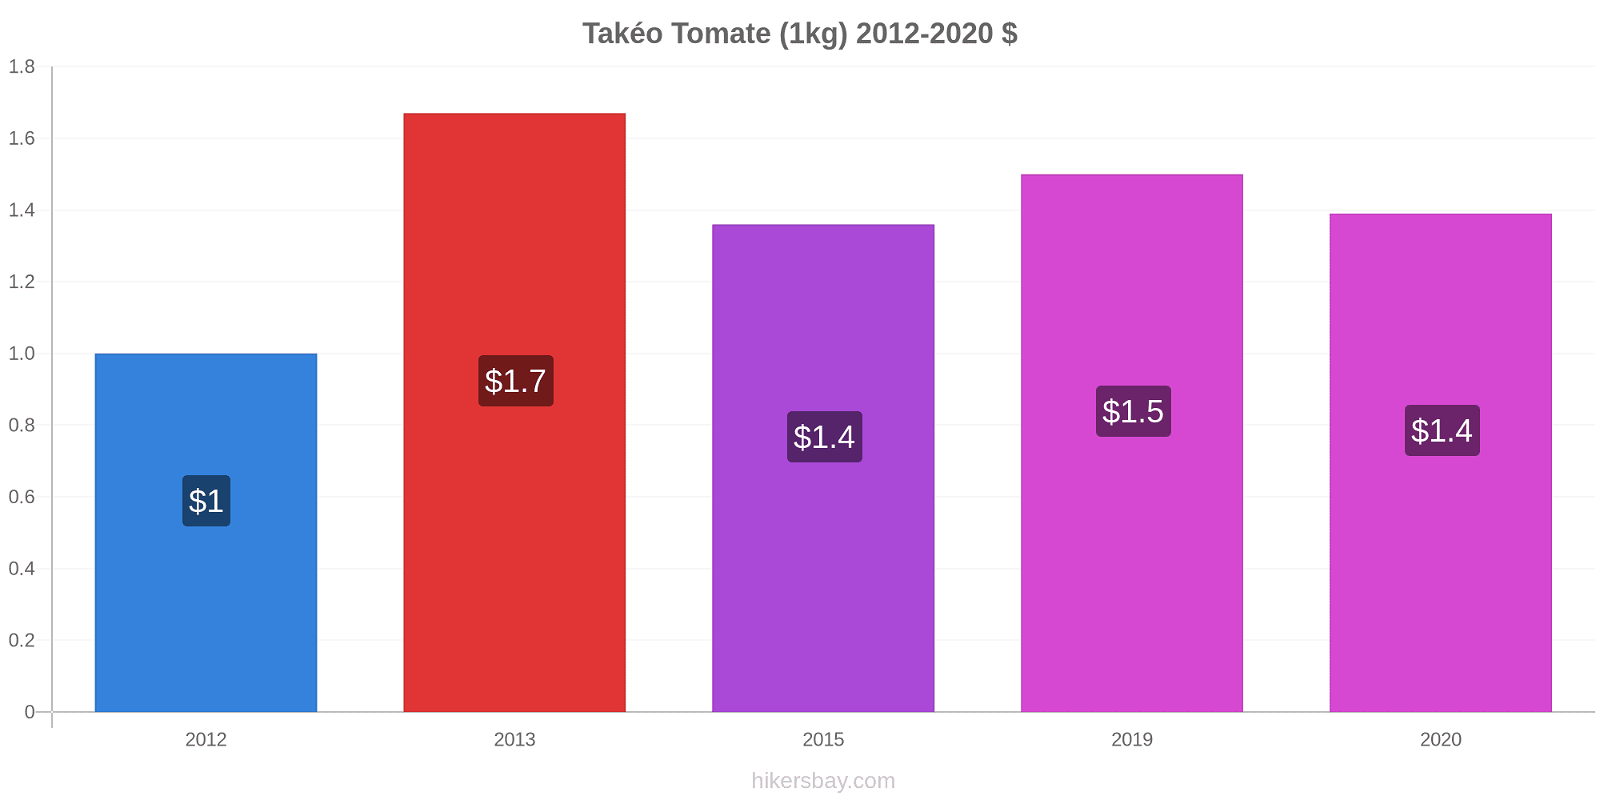 Takéo variação de preço Tomate (1kg) hikersbay.com